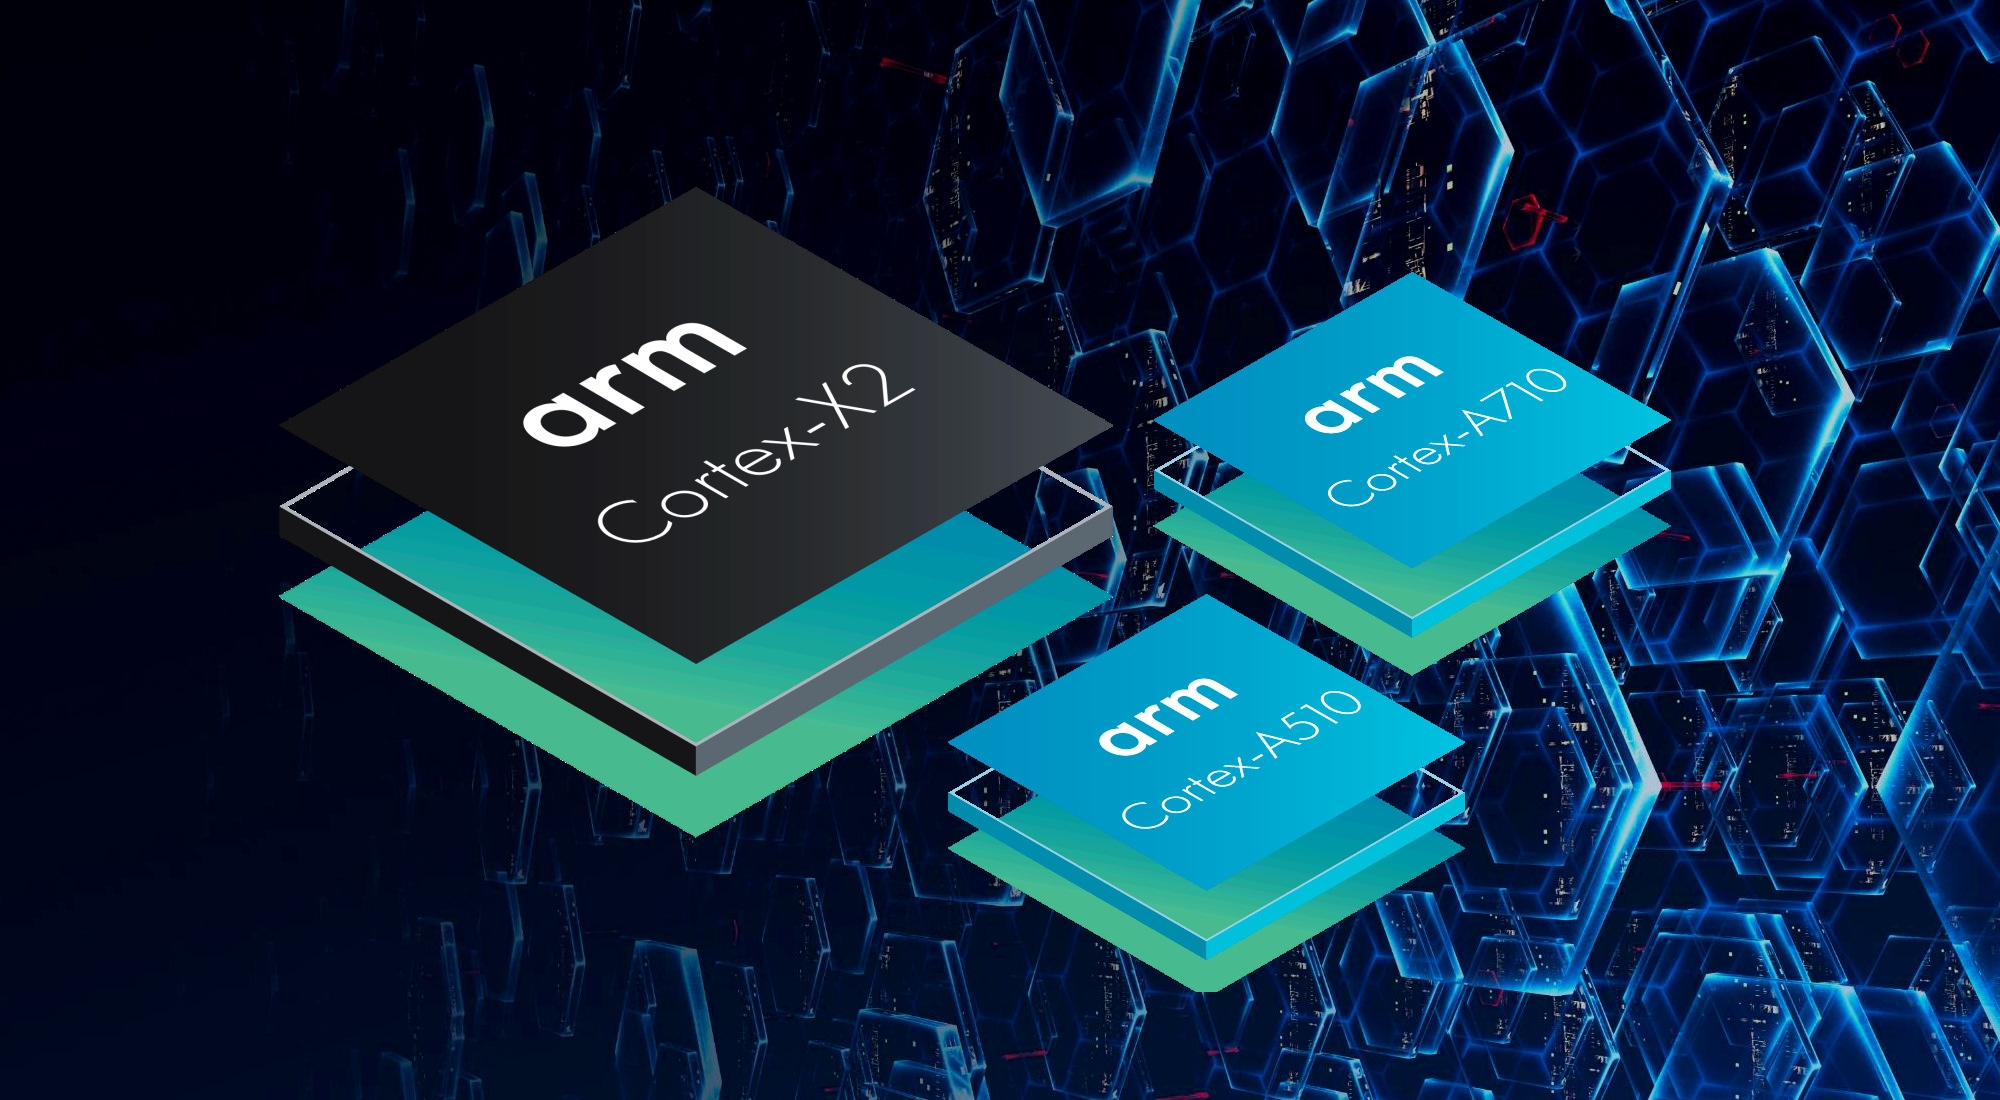 ARM Cortex-X2、A710/A510发布：性能暴涨35%